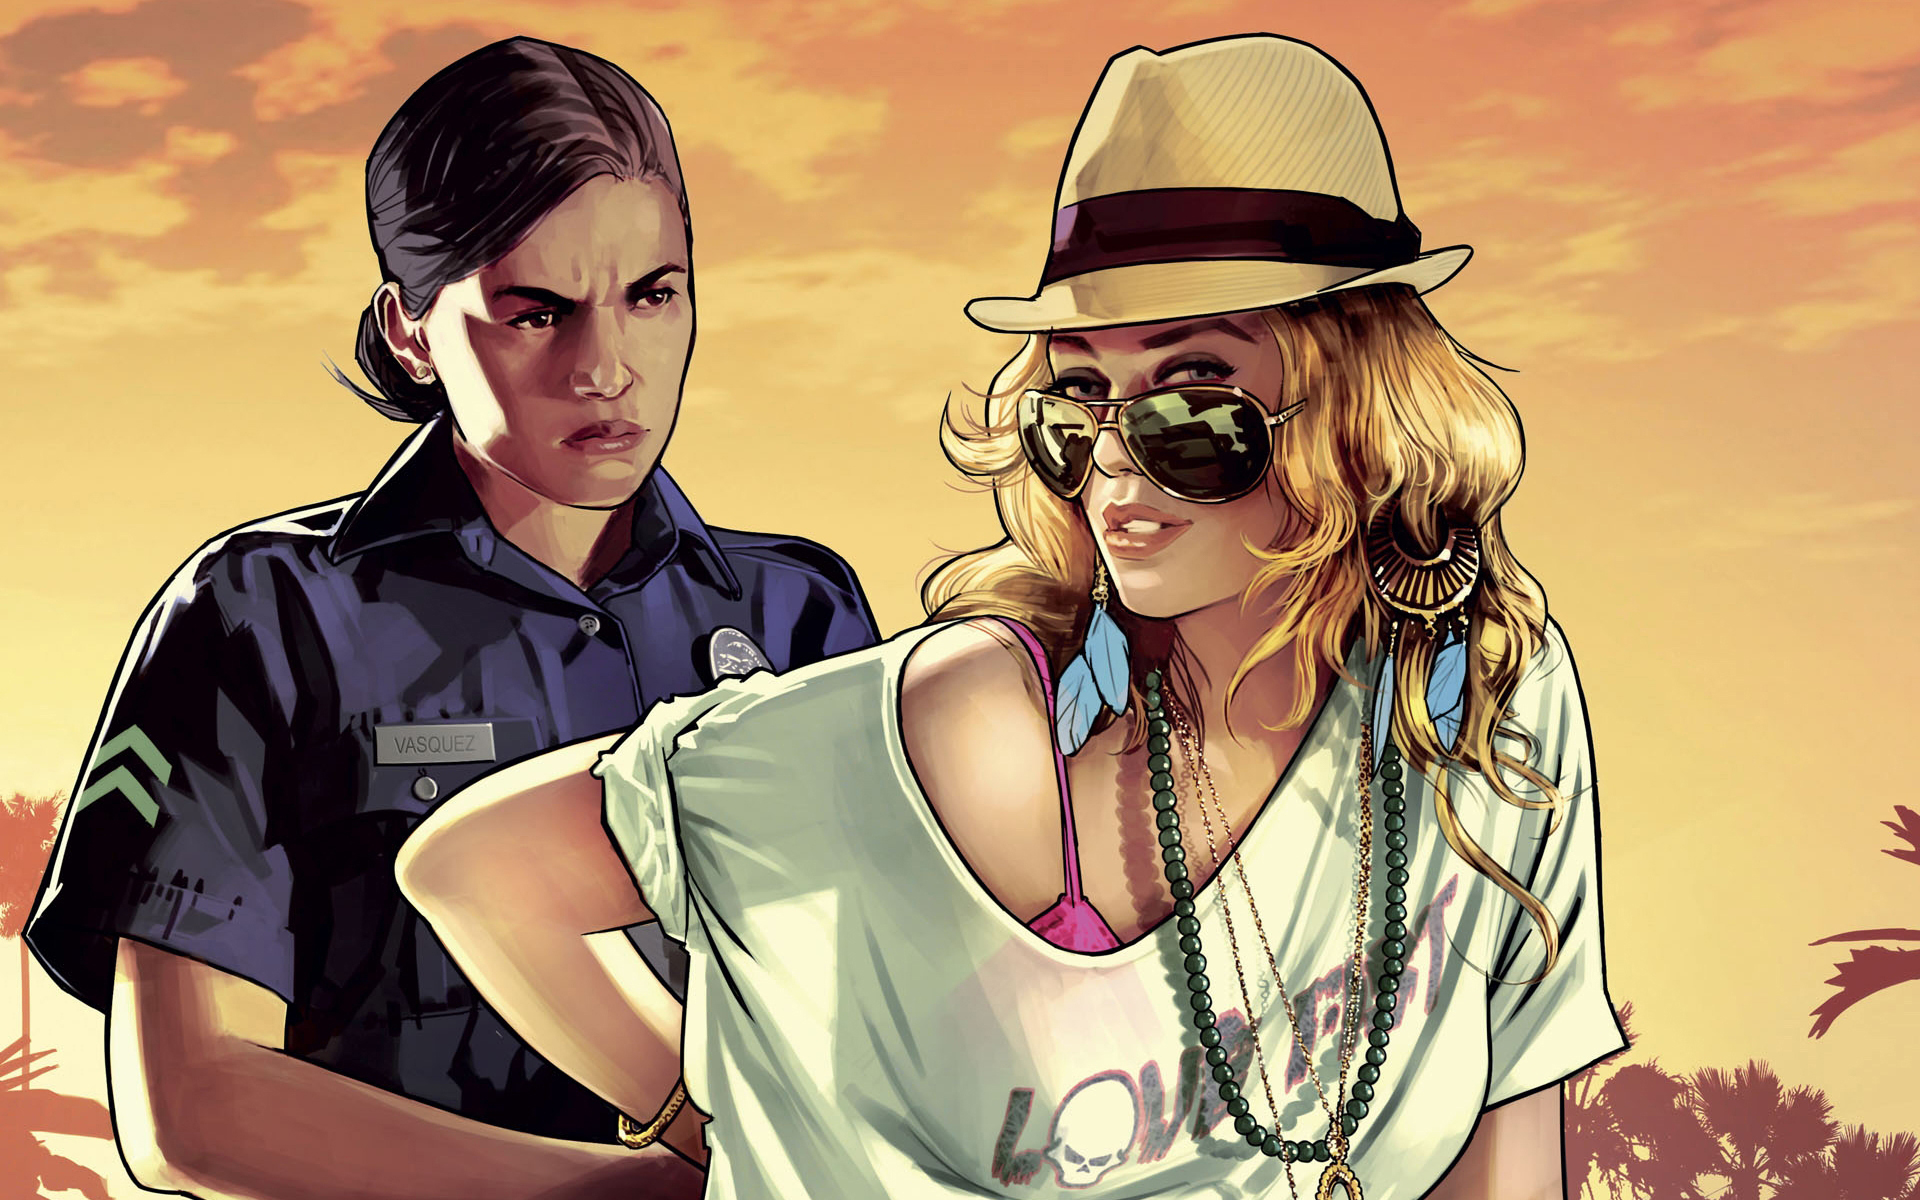 RESENHUDOS: Crítica do jogo GTA 5 (Grand Theft Auto V)